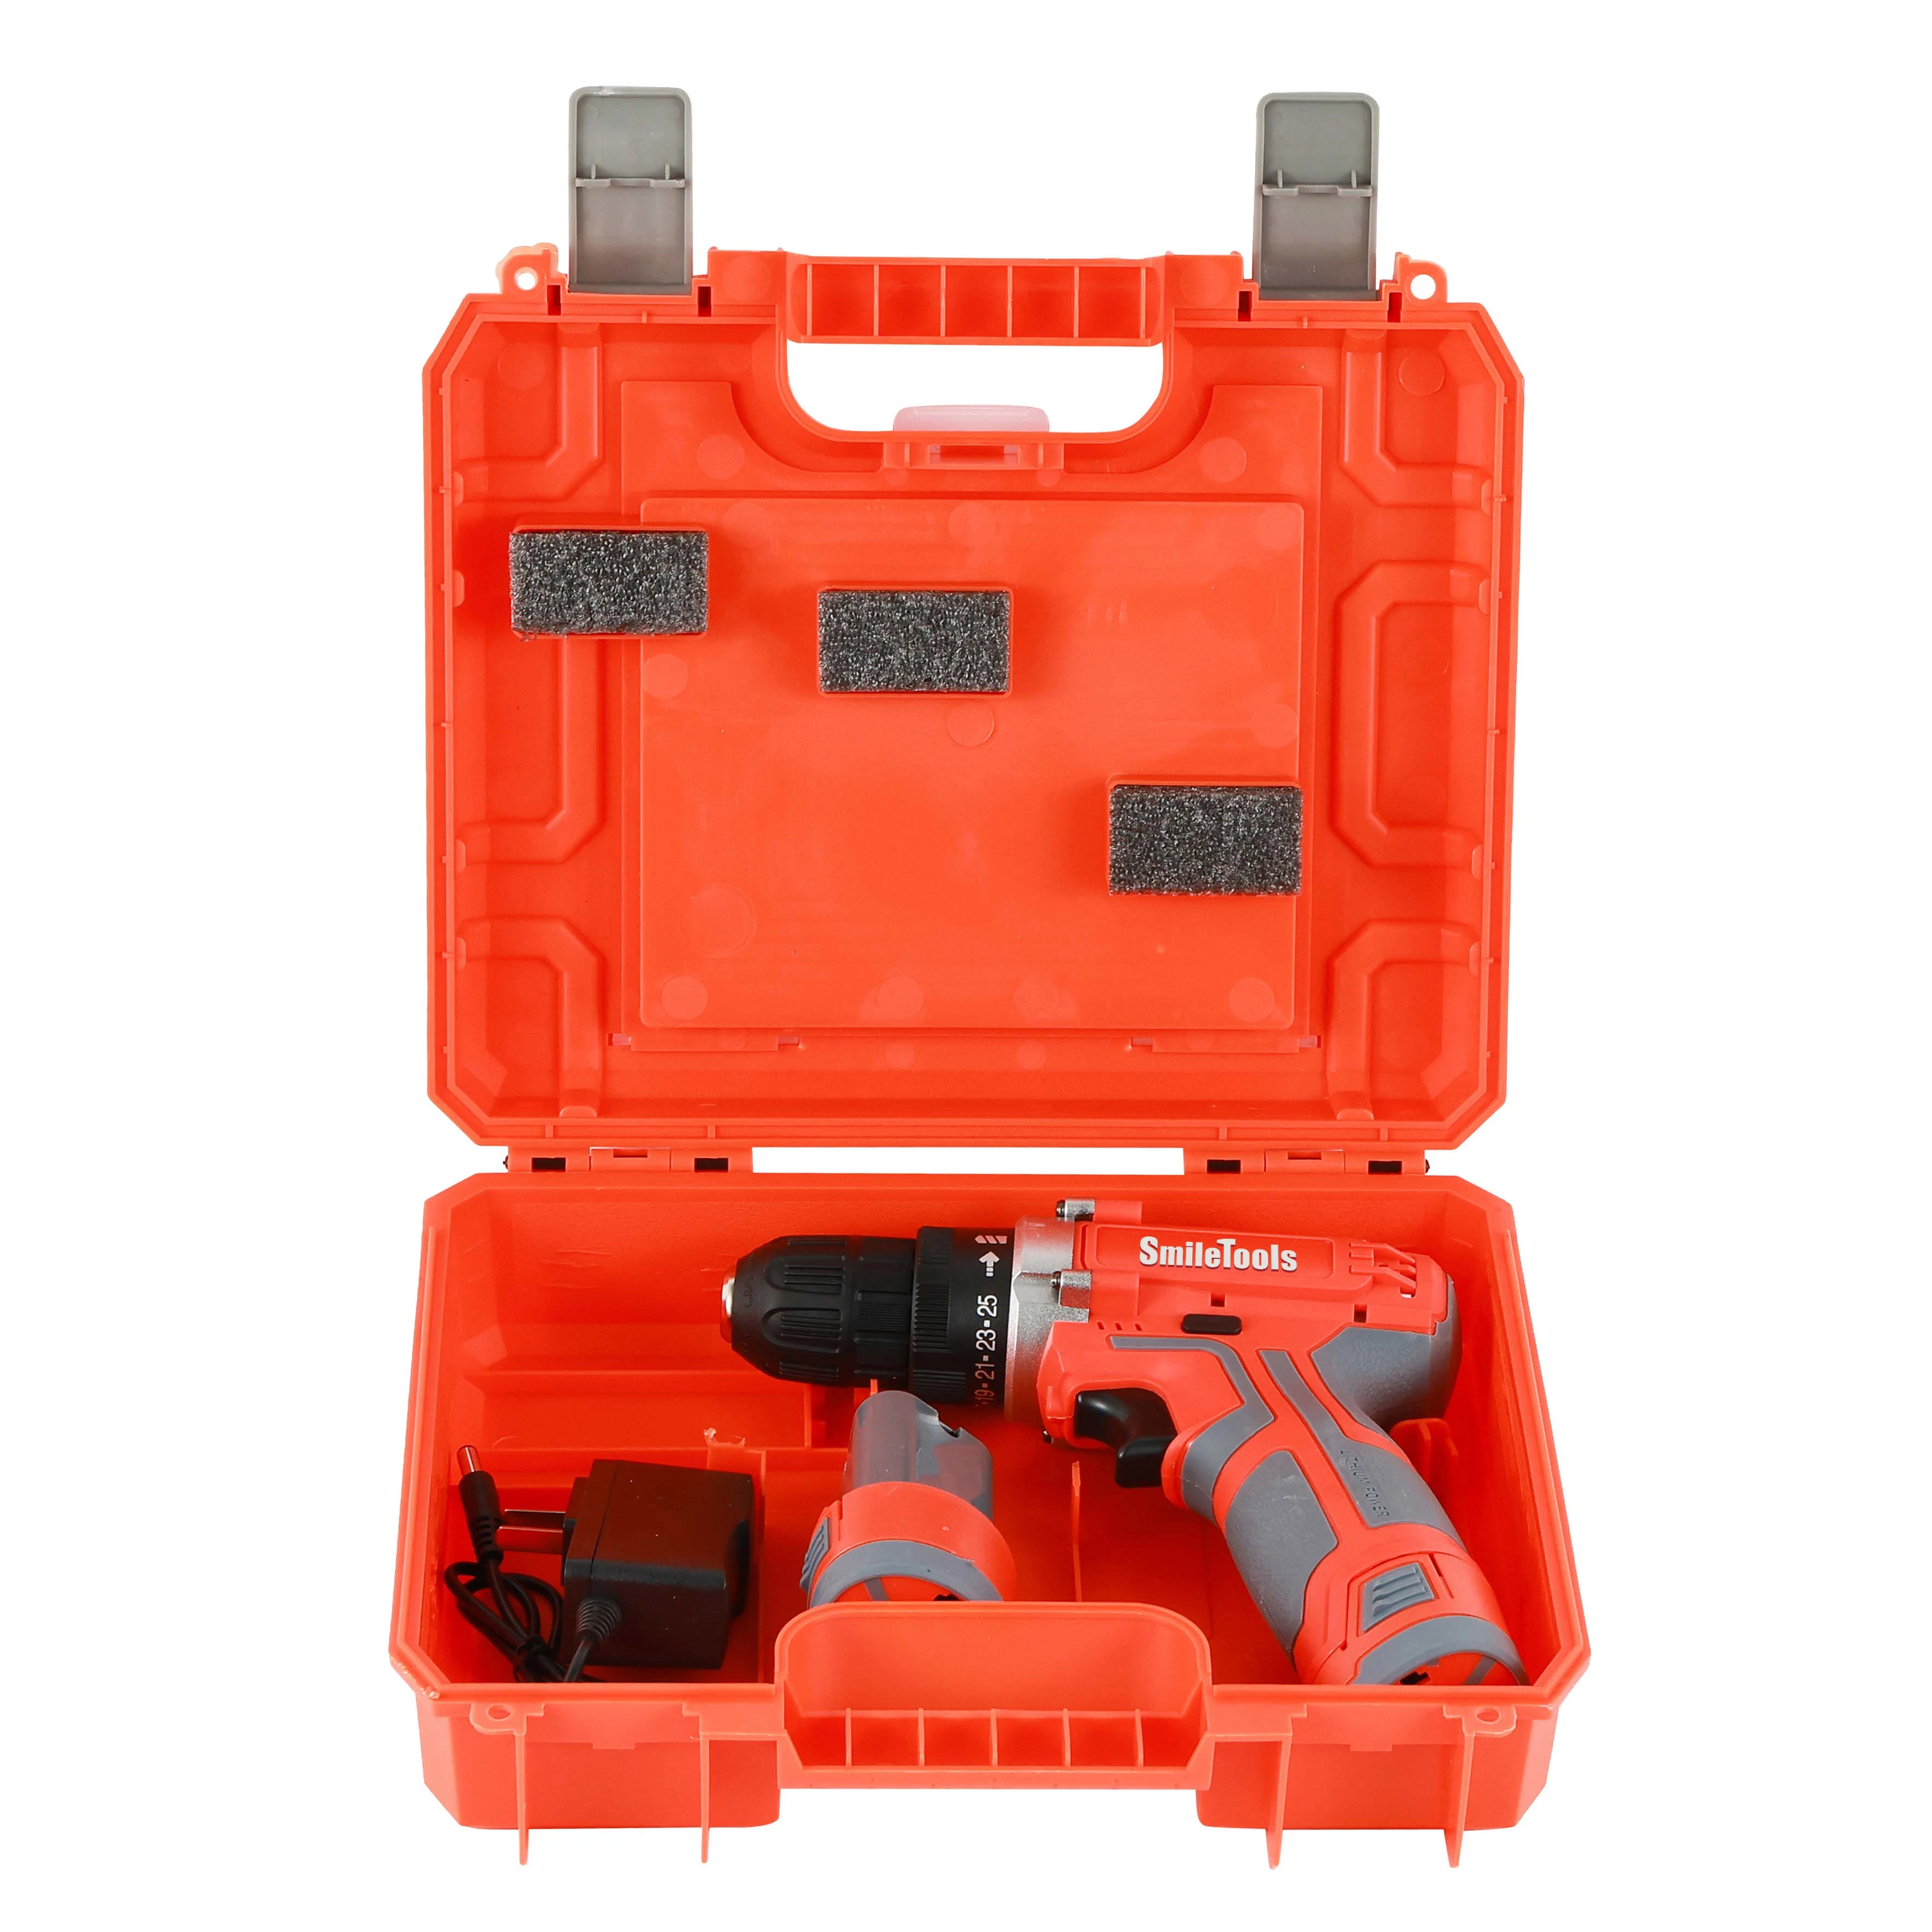 12V Hot Sale Professional Power Tool Combo Set Portable Electric Juego combinado de herramientas eléctricas Equipo de brocas inalámbricas